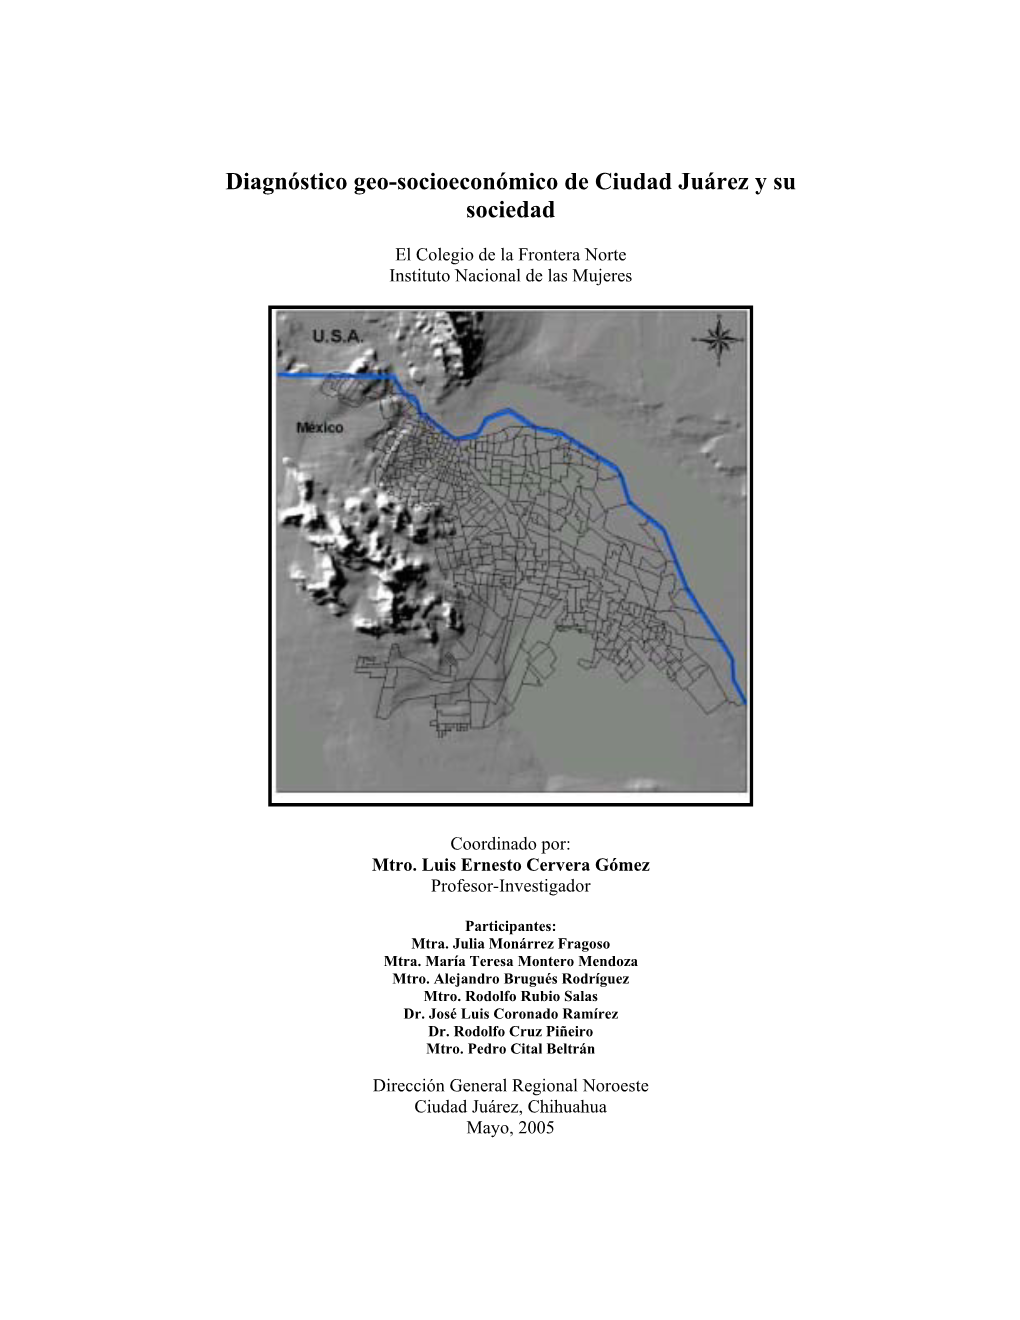 Diagnóstico Geo-Socioeconómico De Ciudad Juárez Y Su Sociedad